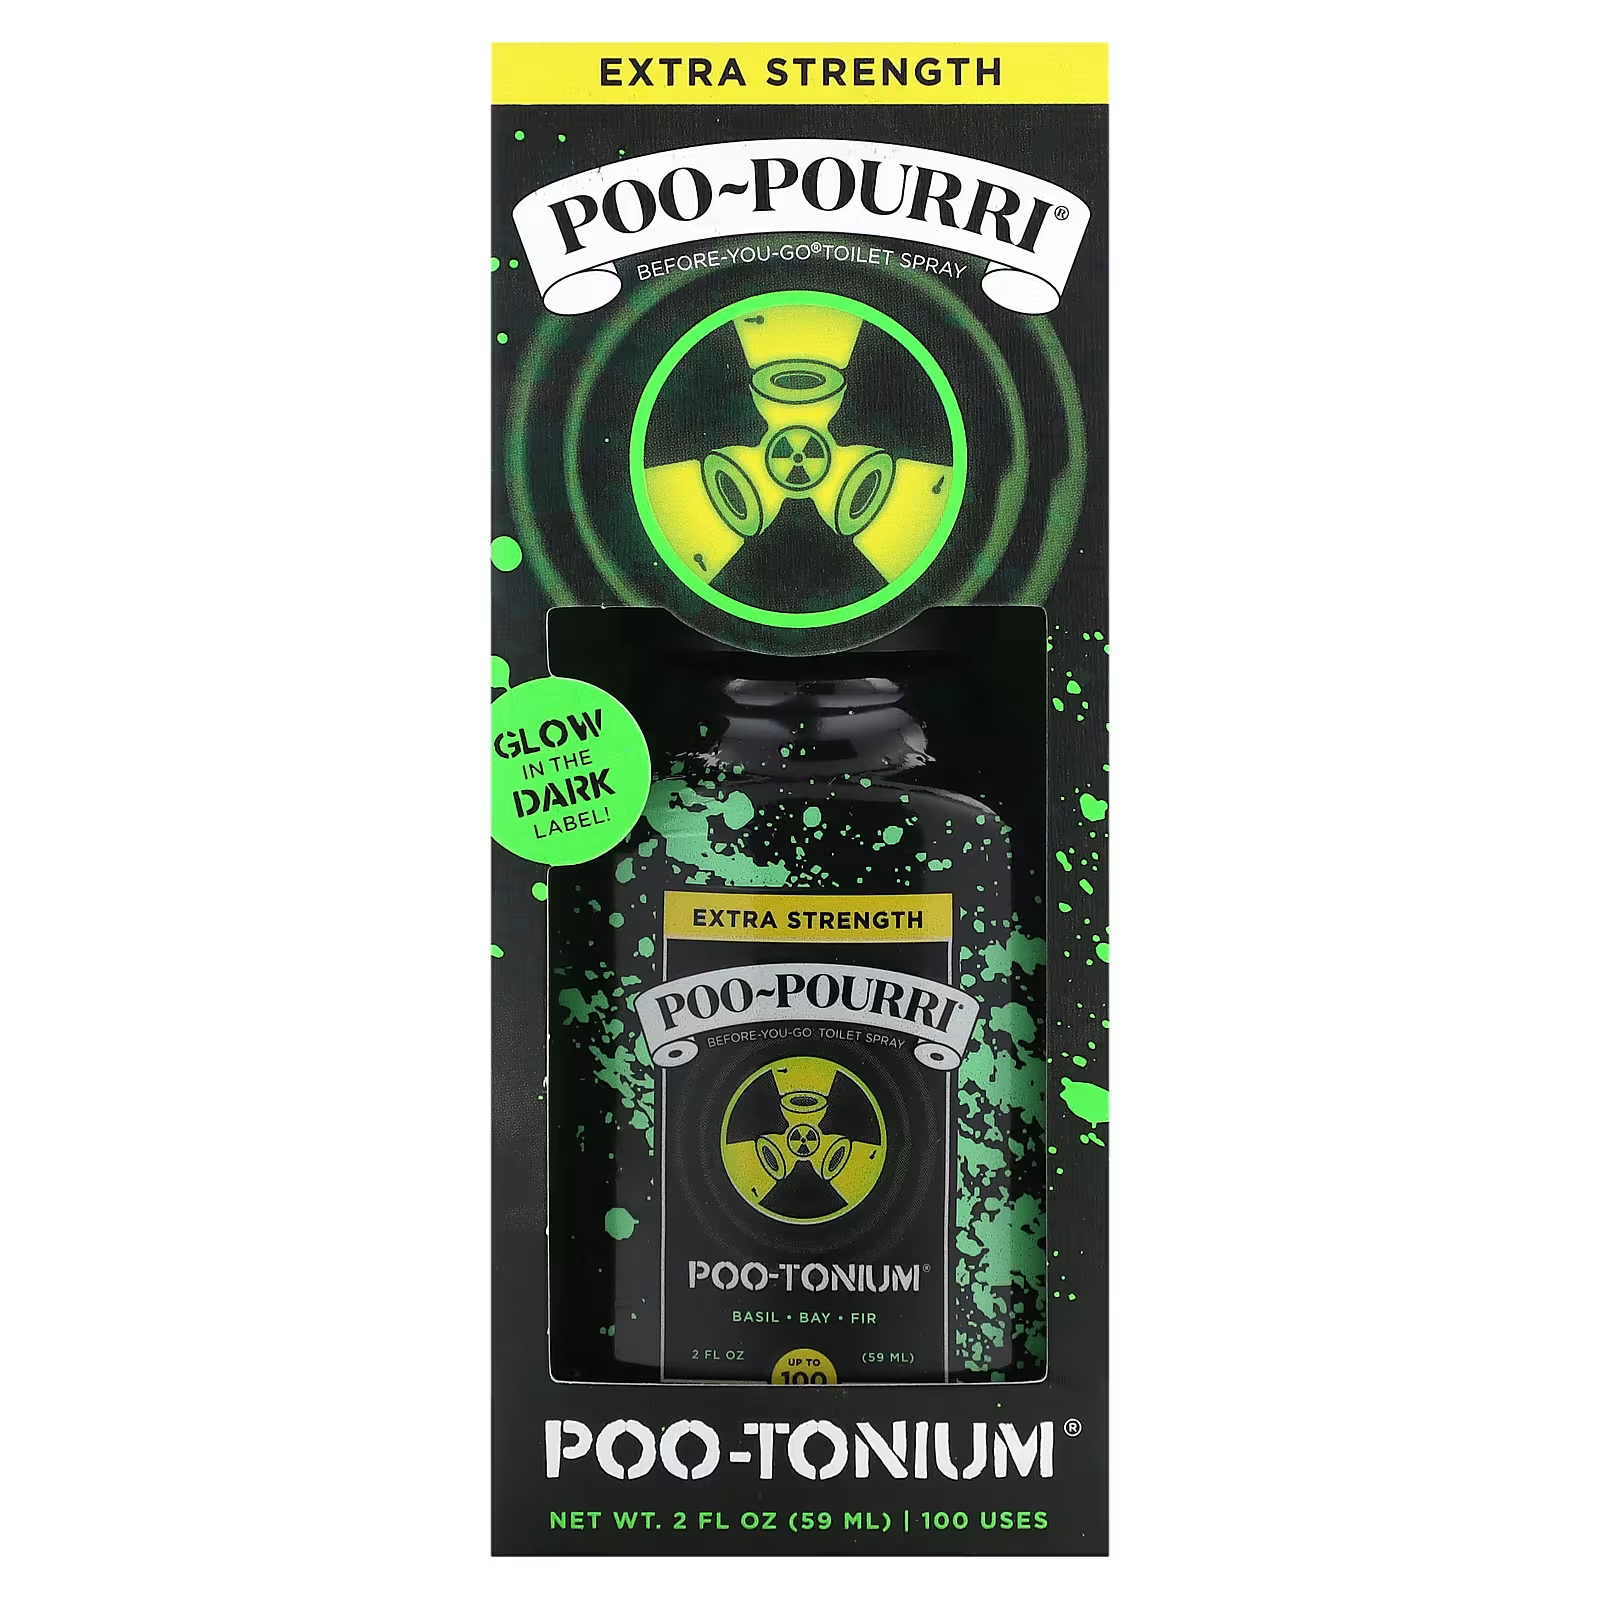 Спрей-освежитель для туалета Poo-Tonium Poo-Pourri Before-You-Go с повышенной силой, 59 мл кружка emoji poo